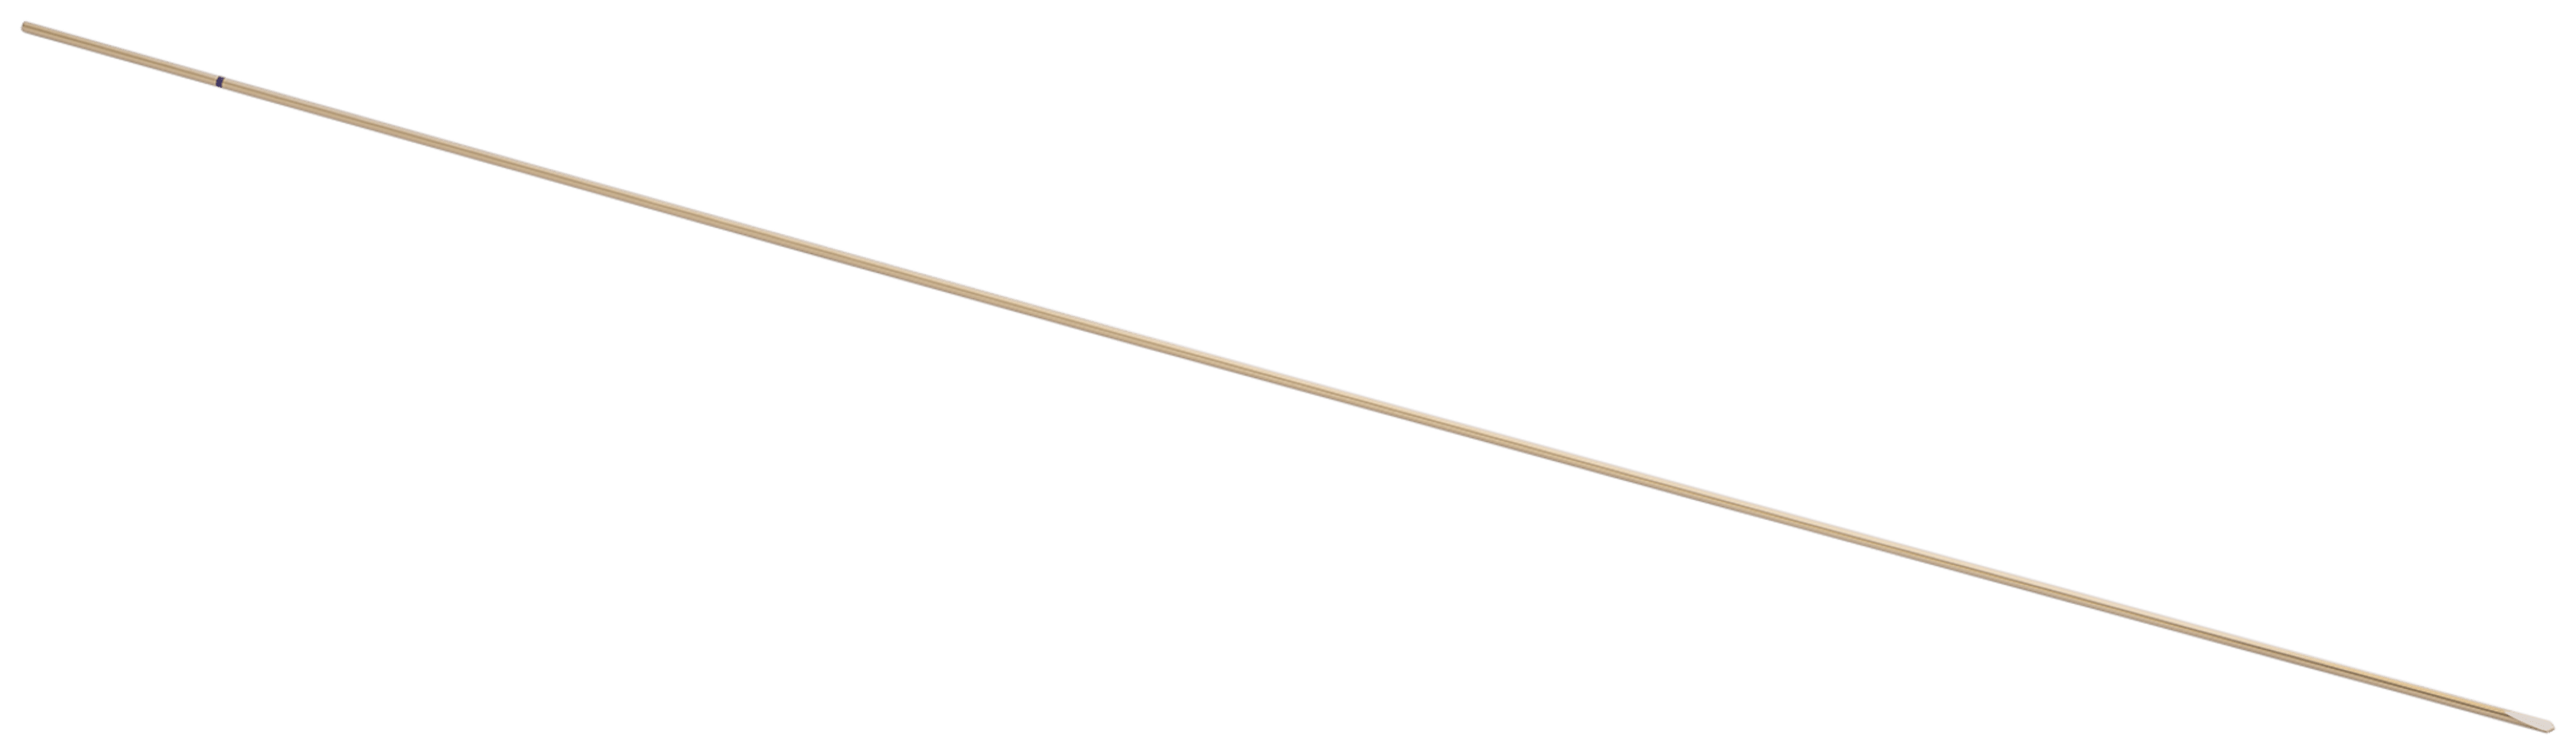 Einwegbohrer für FiberTak-Fadenanker für die Hüfte, flexibel, 1.8 mm